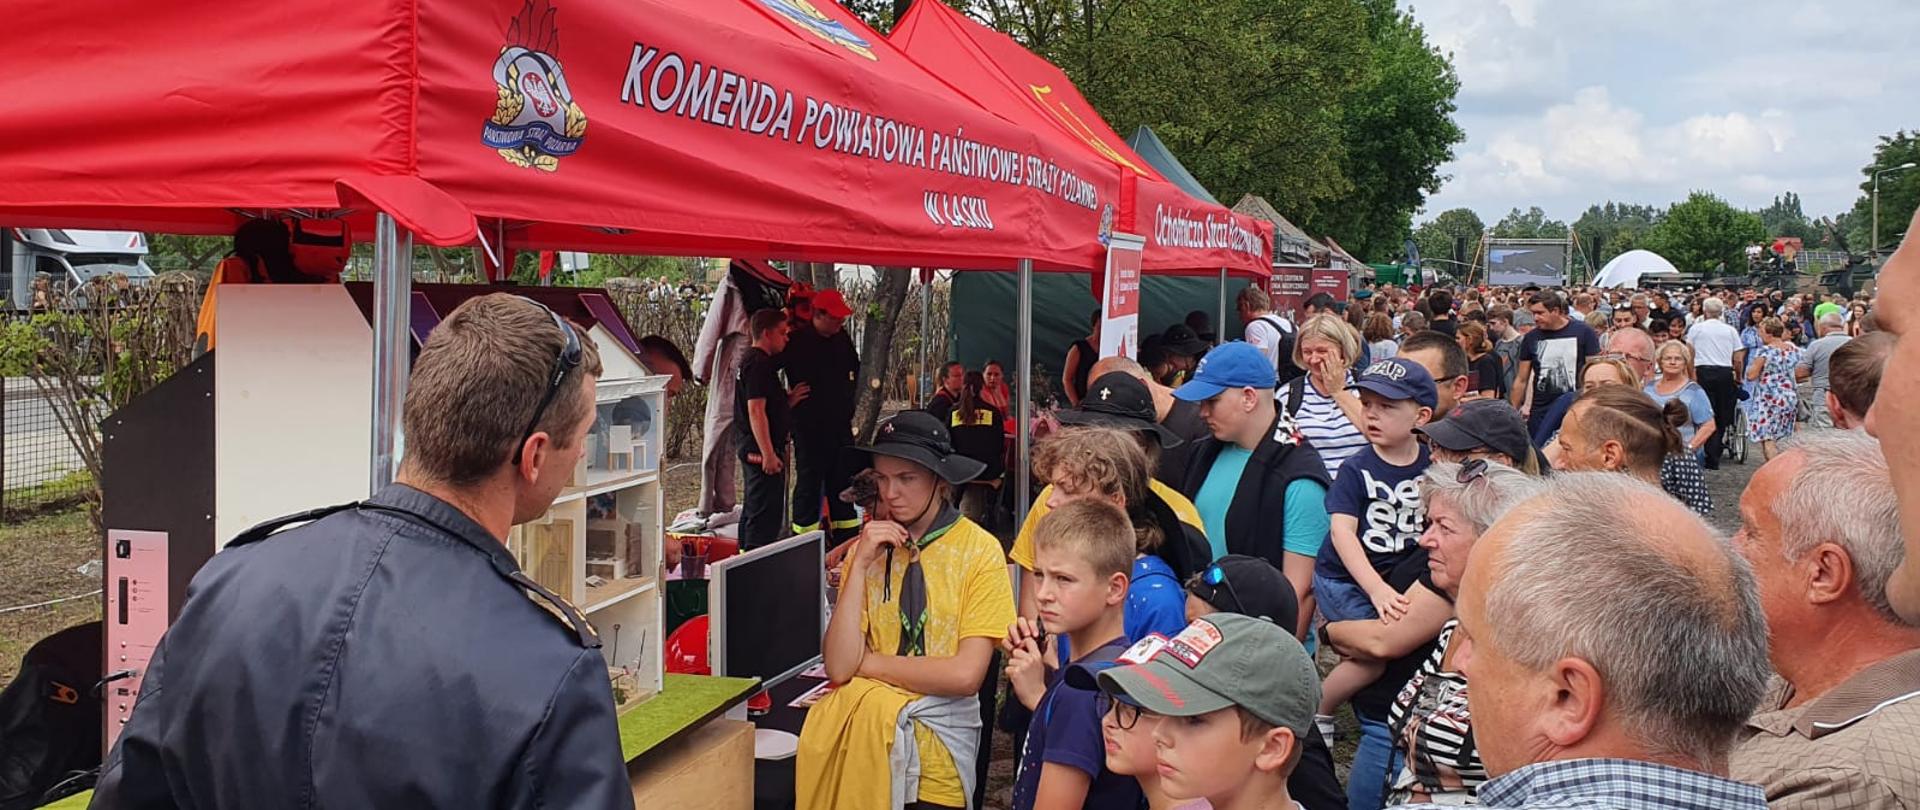 Zdjęcie przedstawia strażaka podczas prezentacji stoiska na pikniku wojskowym zorganizowanym z okazji święta Wojska Polskiego, upamiętniającego Cud nad Wisłą. 